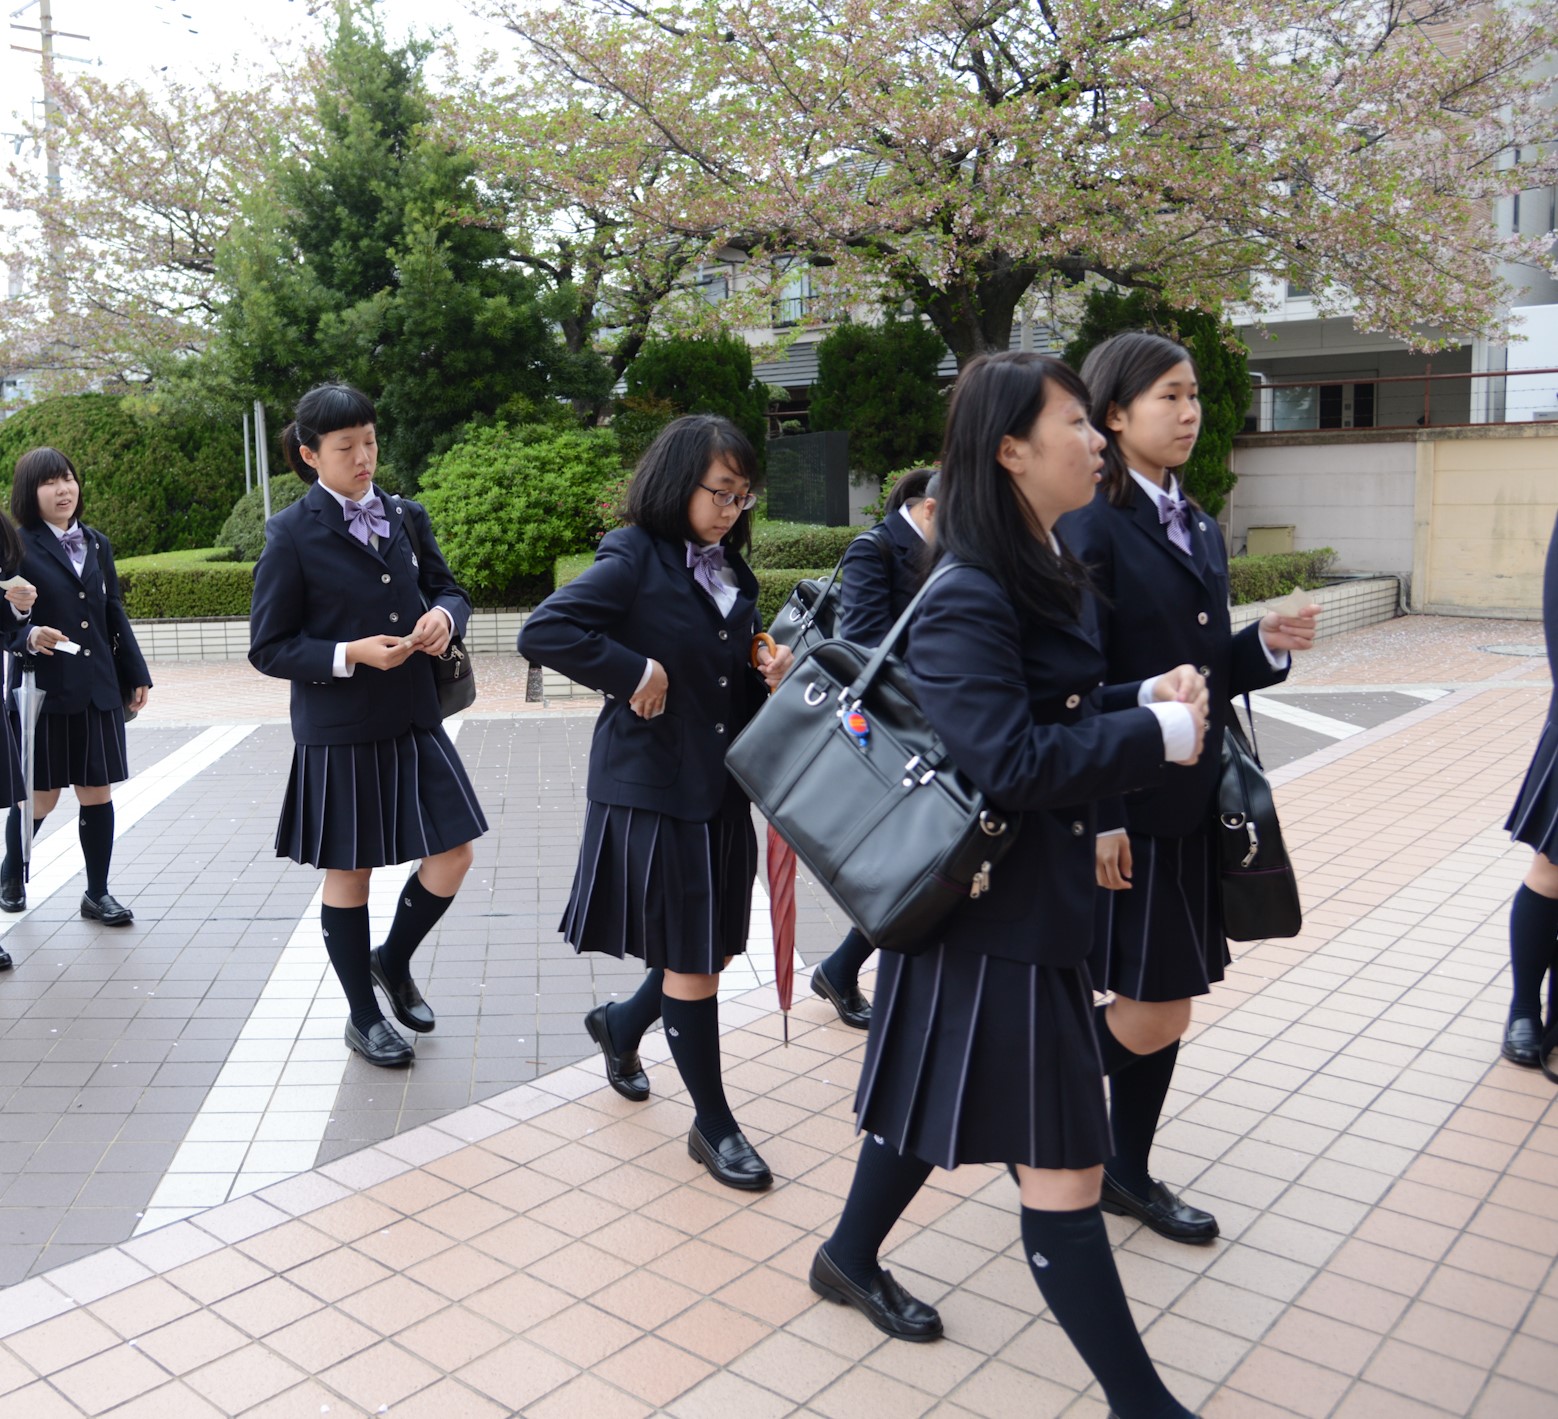 ニュース トピックス 大阪で美容師 保育士 資格取得をめざすなら香ヶ丘リベルテ高等学校